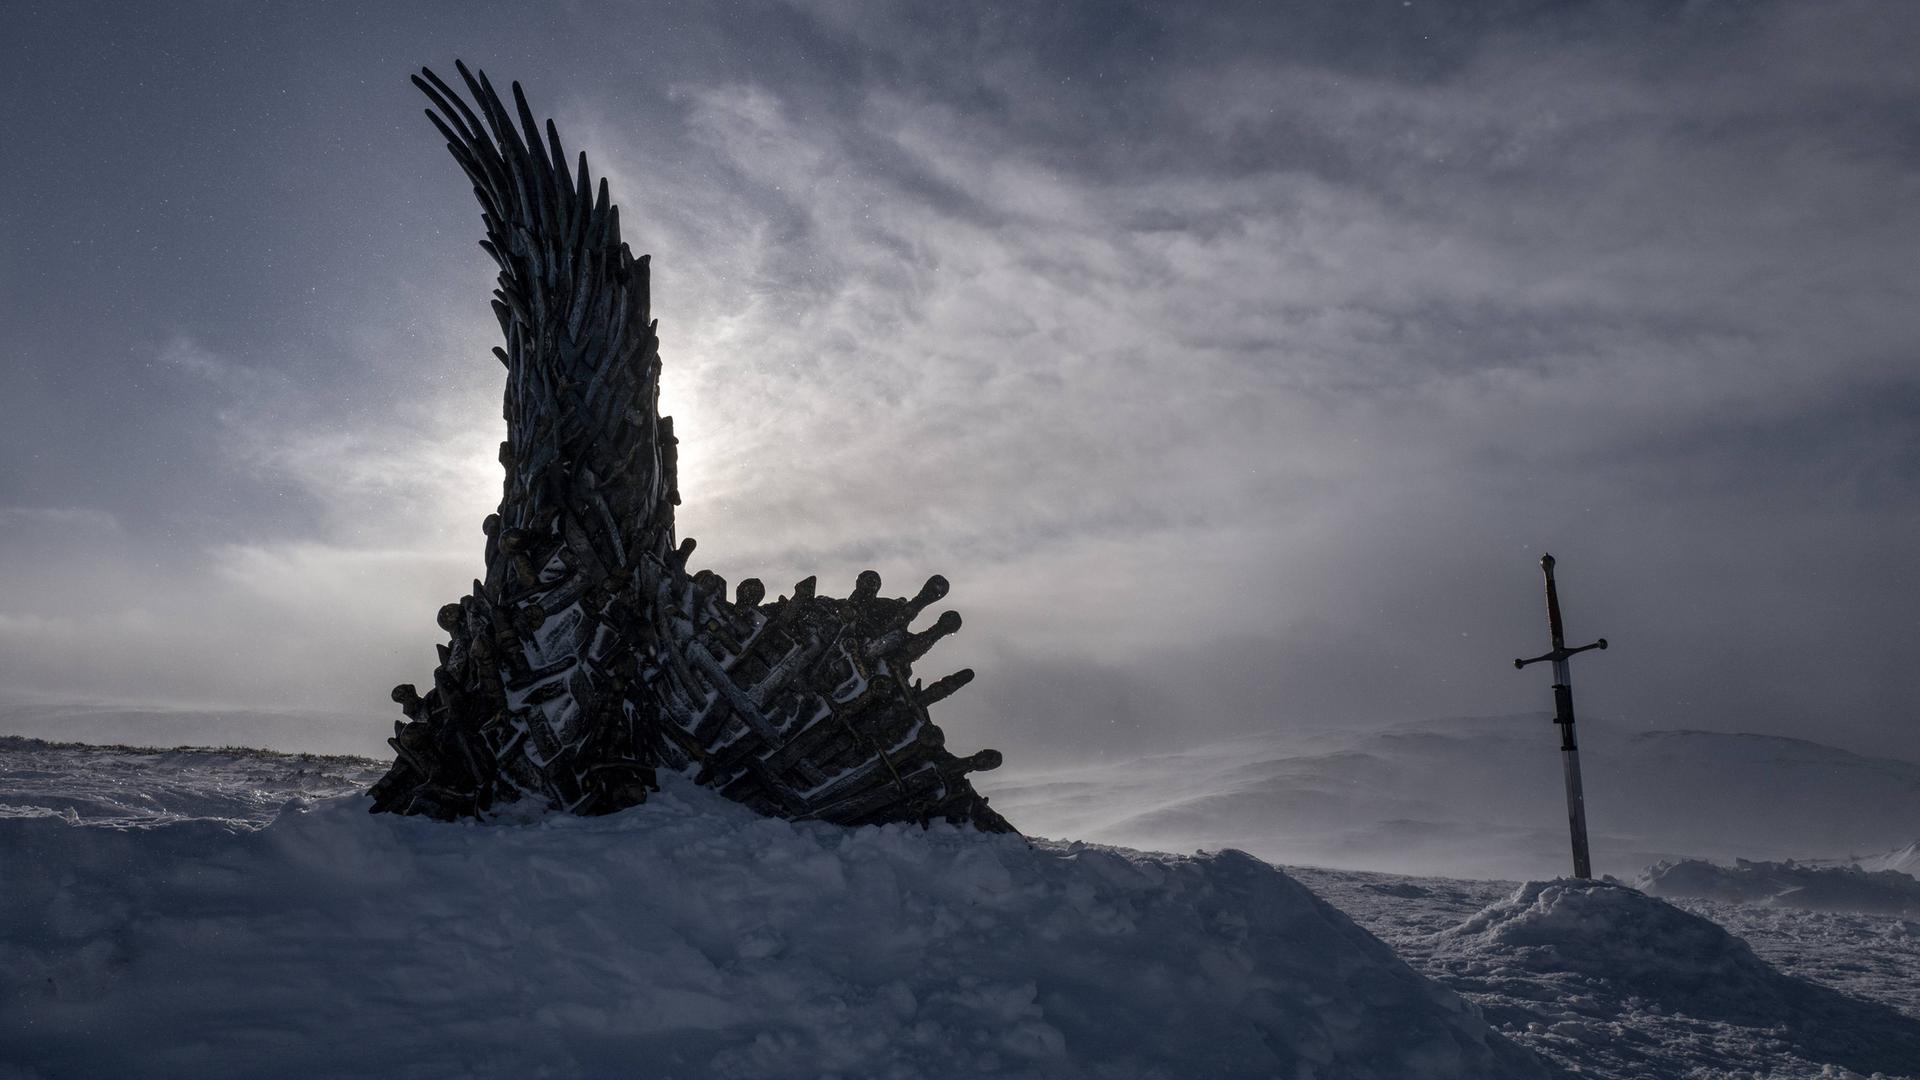 In einer düsteren Schneelandschaft steht der Thron aus der Fantasy-Serie Game of Thrones, daneben steckt ein Schwert im Schnee.